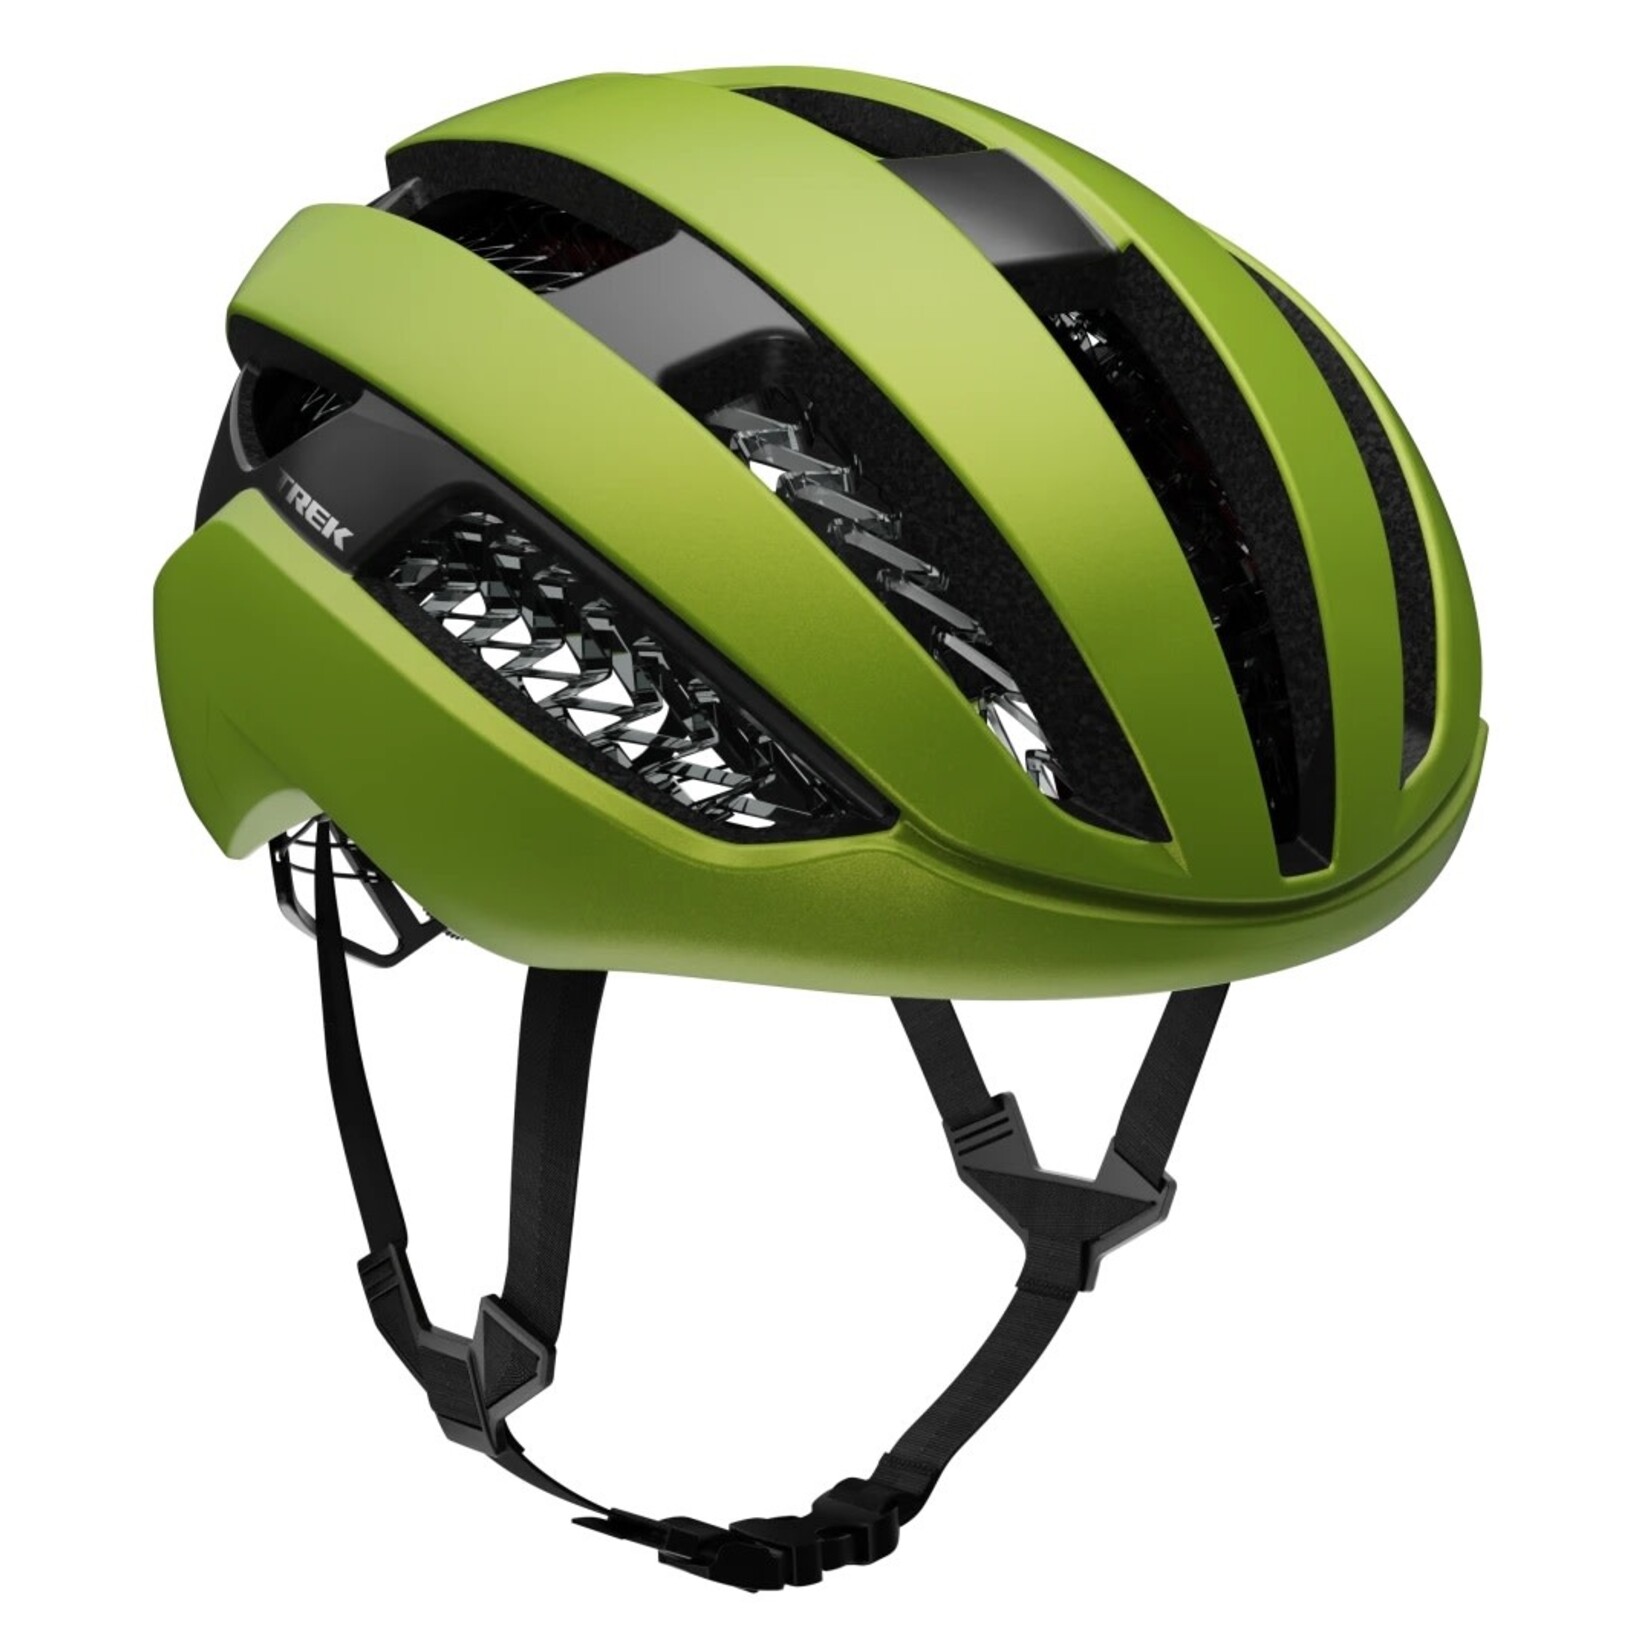 TREK Trek Circuit Wavecel Helmet